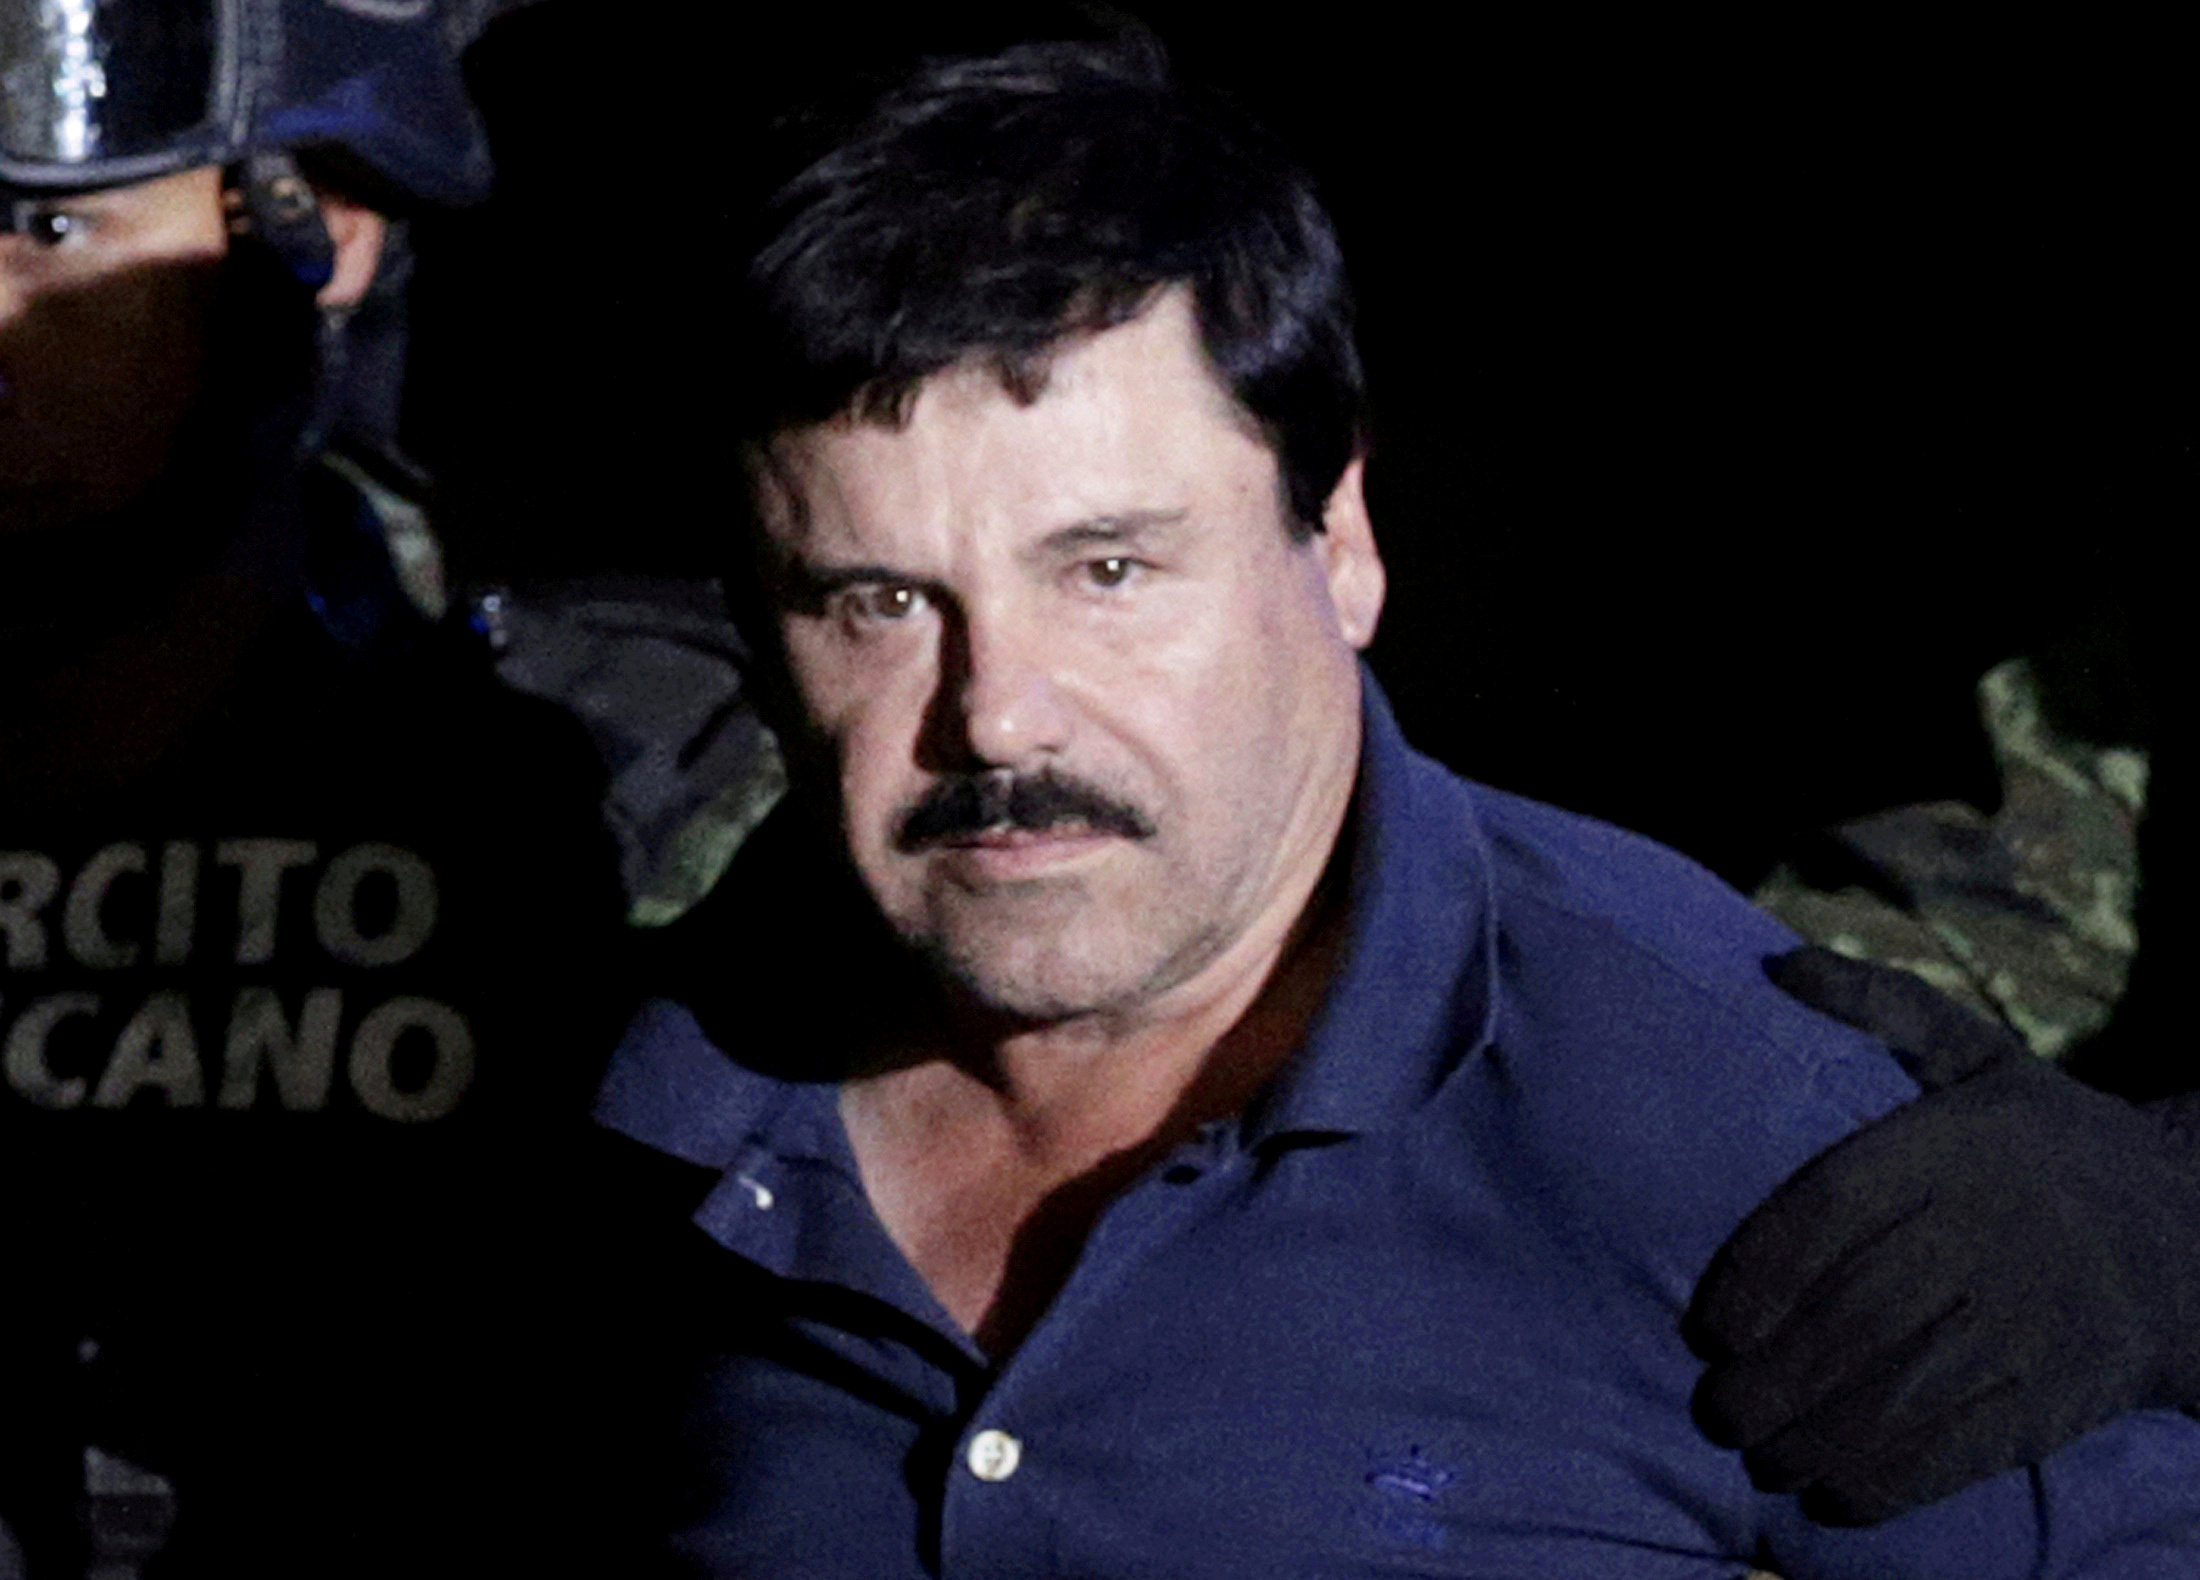 La esposa de El Chapo rompe el silencio y dice estar inquieta por su salud